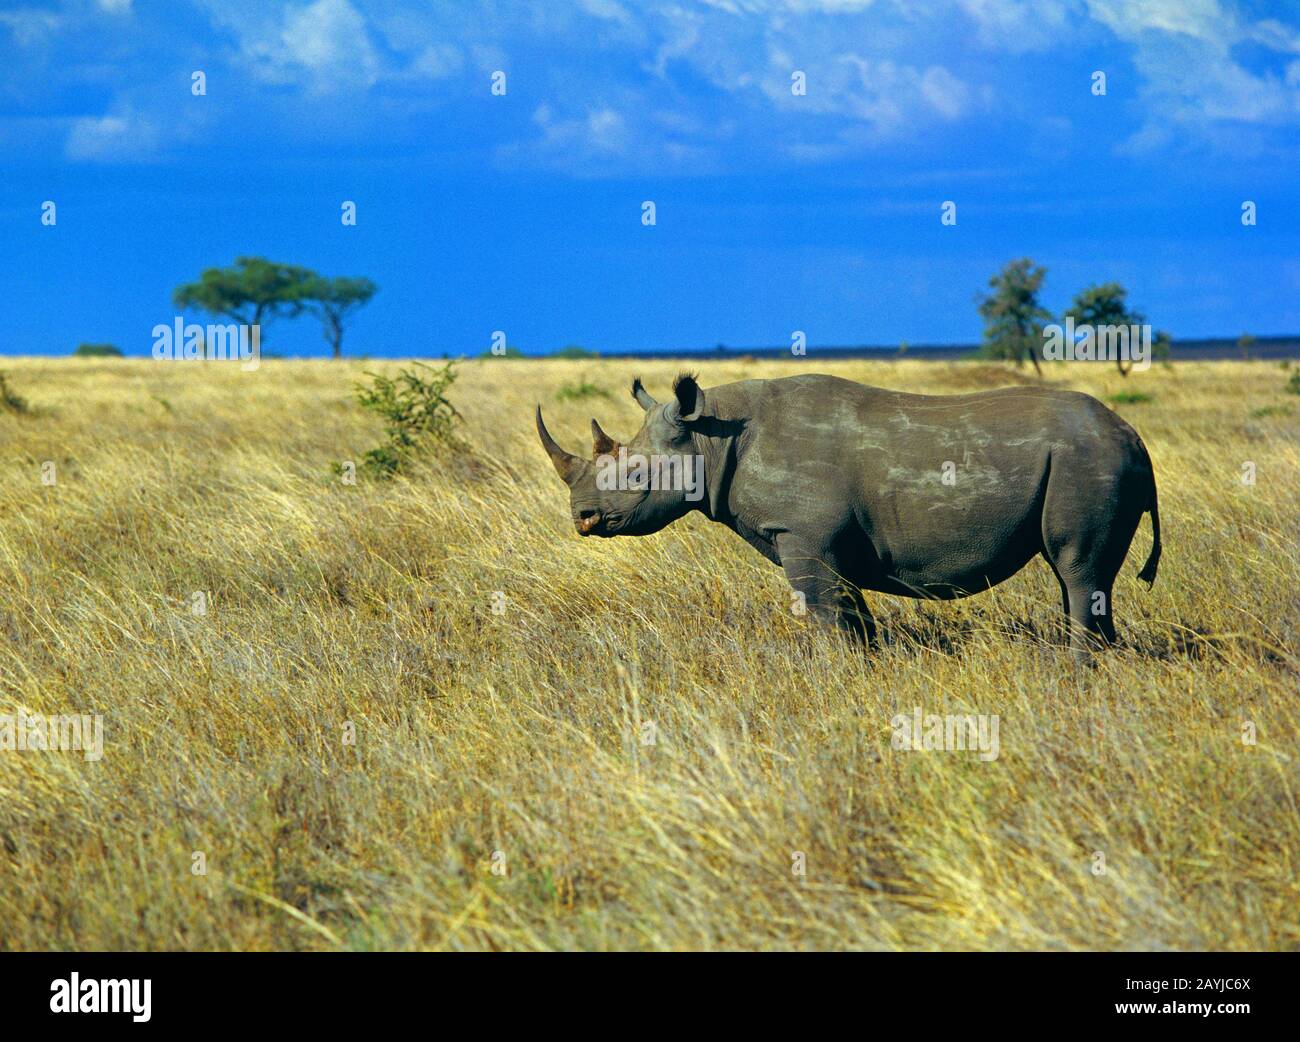 Schwarze Nashörner, mit Hakenlippen bestückte Nashörner, Nashörner (Diceros bicornis), in der Savanne stehend, Seitenansicht, Afrika Stockfoto